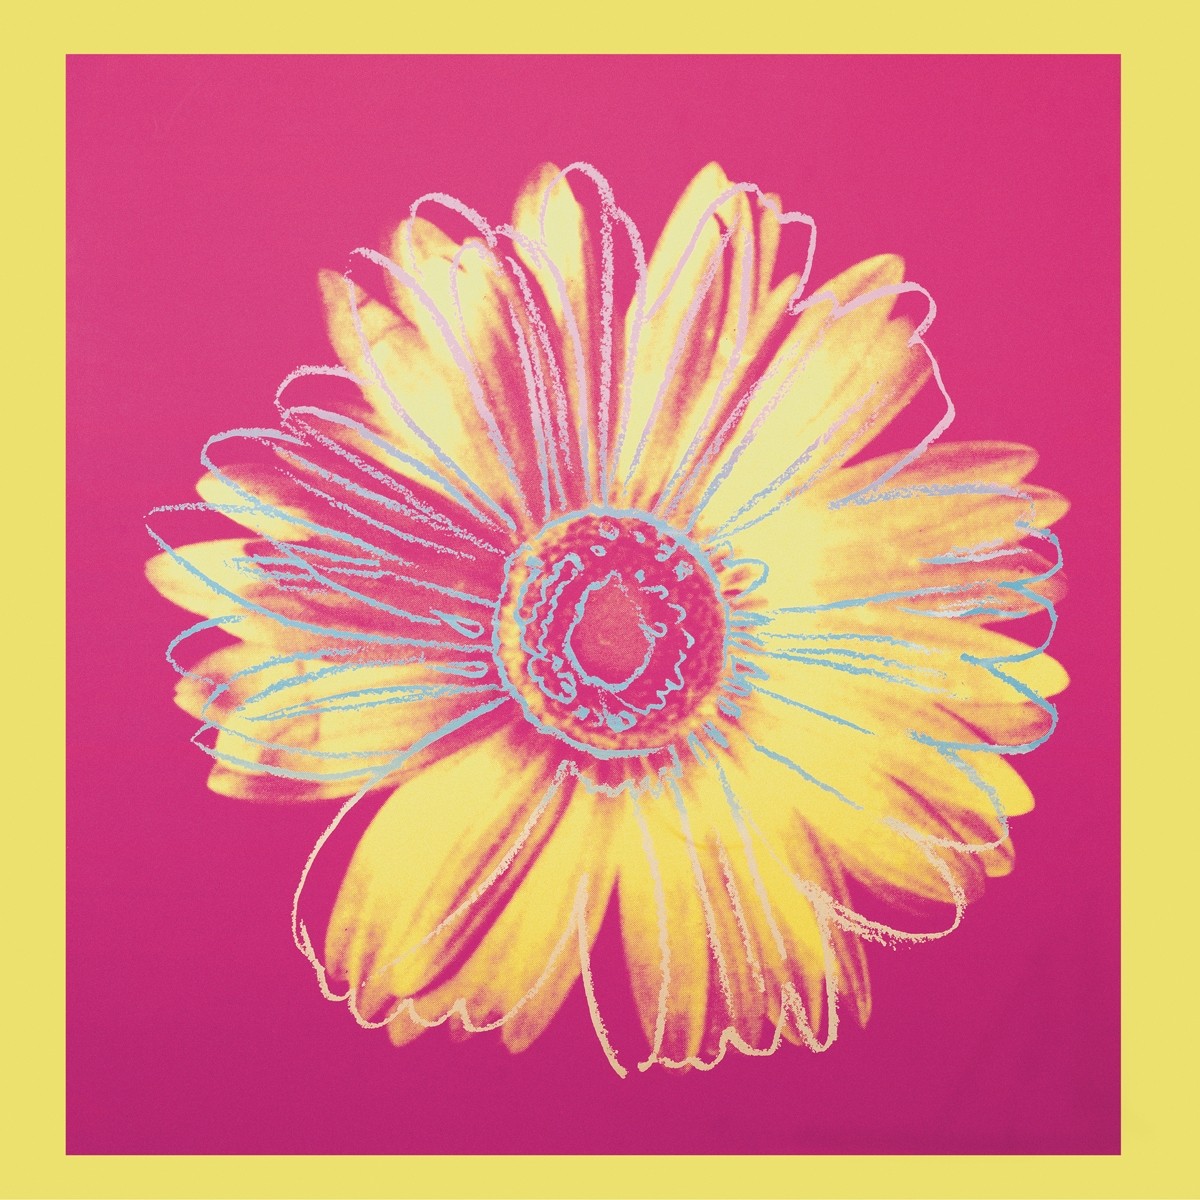 Andy Warhol, Daisy, 1982 (Klassische Moderne, Amerikanische Kunst, Pop Art, Gänseblümchen, Pflanzen, Blumen, Blüten, Wohnzimmer, Business, Arztpraxis, Büro, pink)